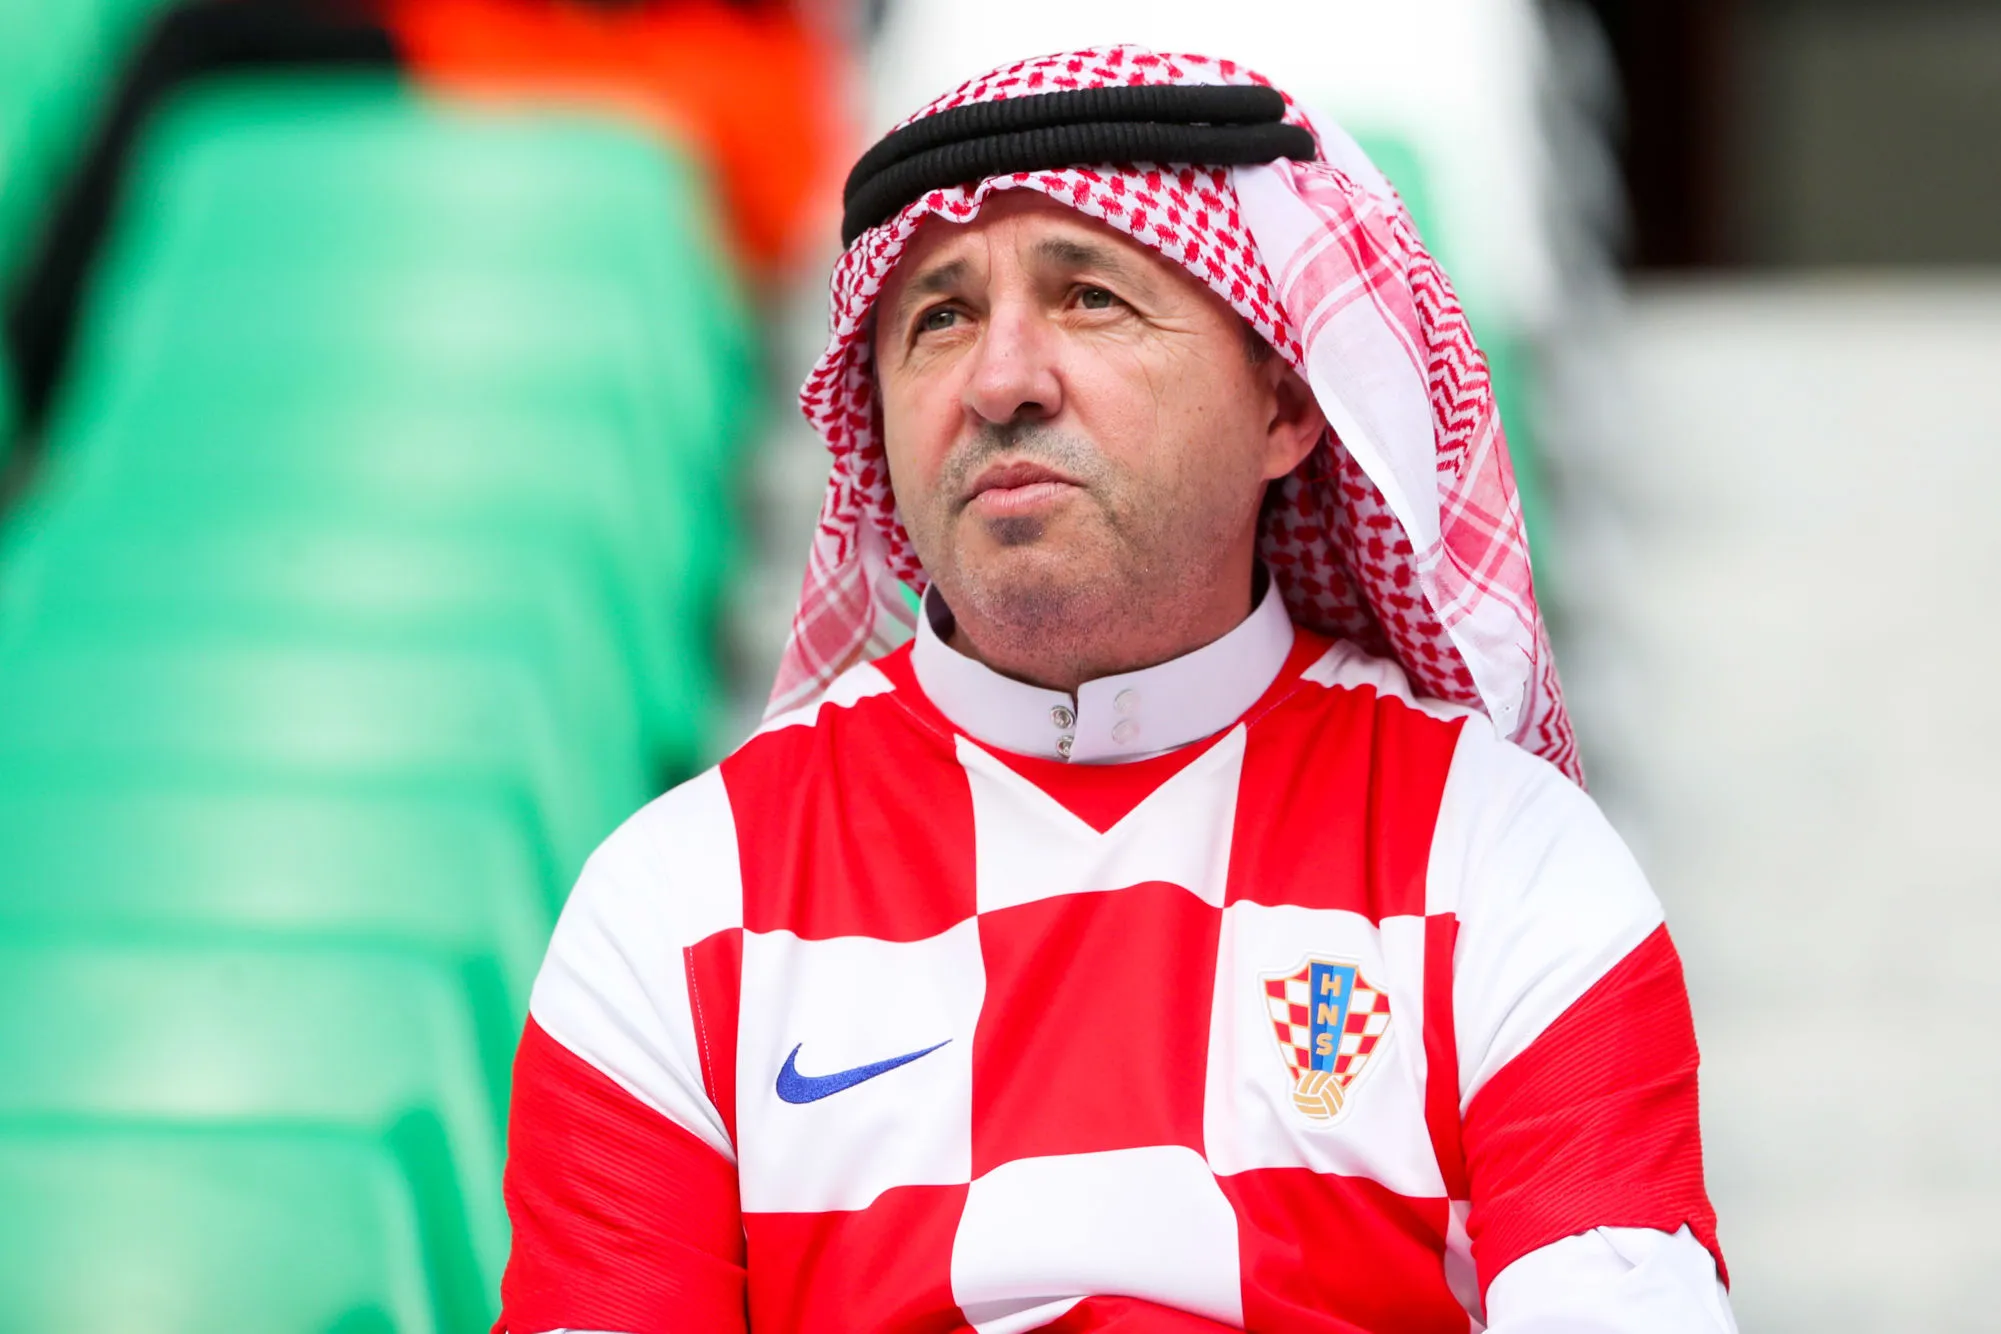 Le Qatar aurait acheté des fans pour sa Coupe du monde